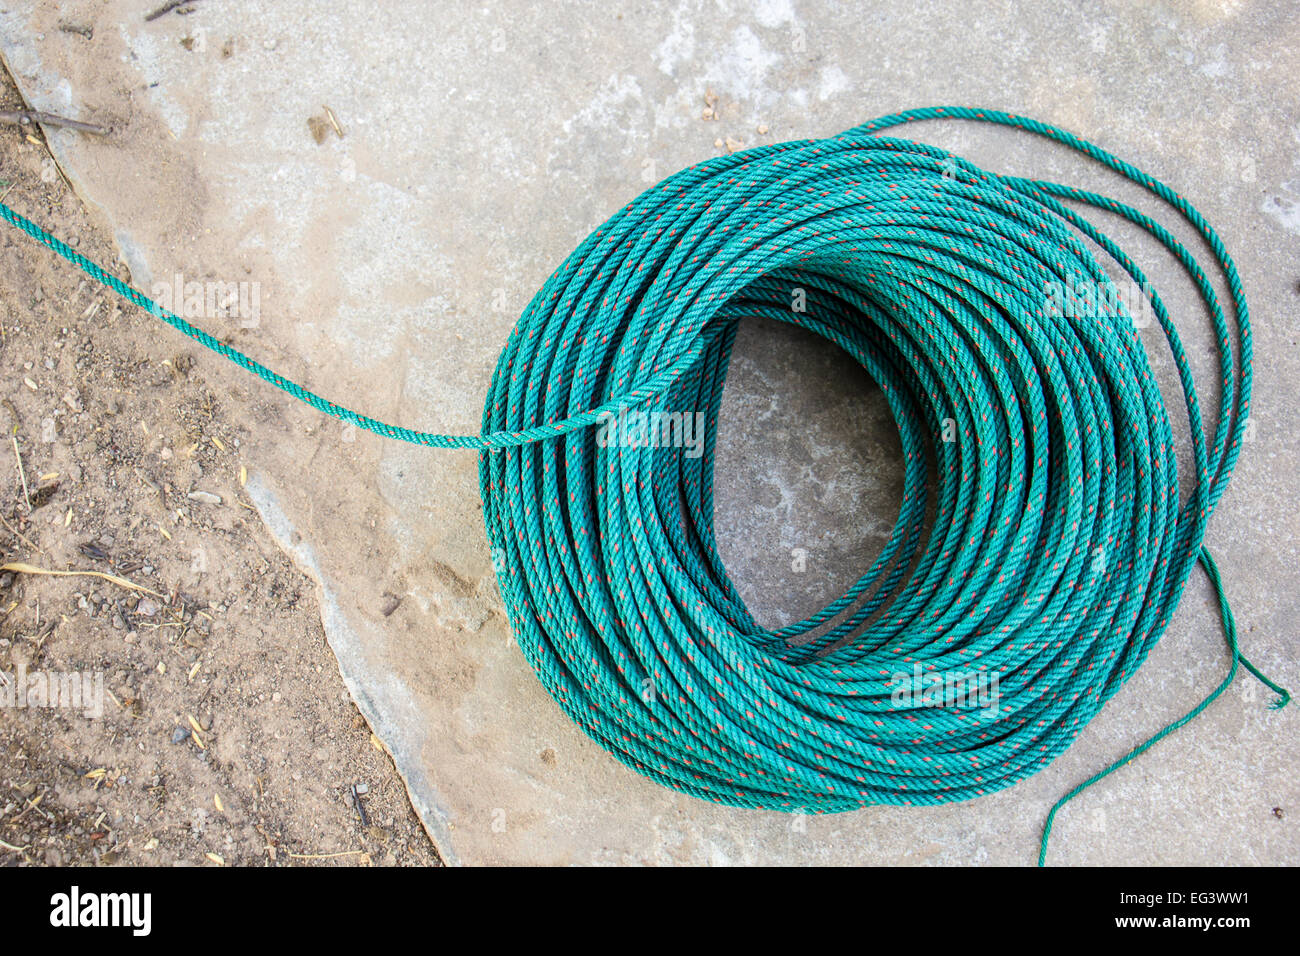 https://c8.alamy.com/comp/EG3WW1/the-green-nylon-rope-reel-line-green-line-rope-nylon-EG3WW1.jpg